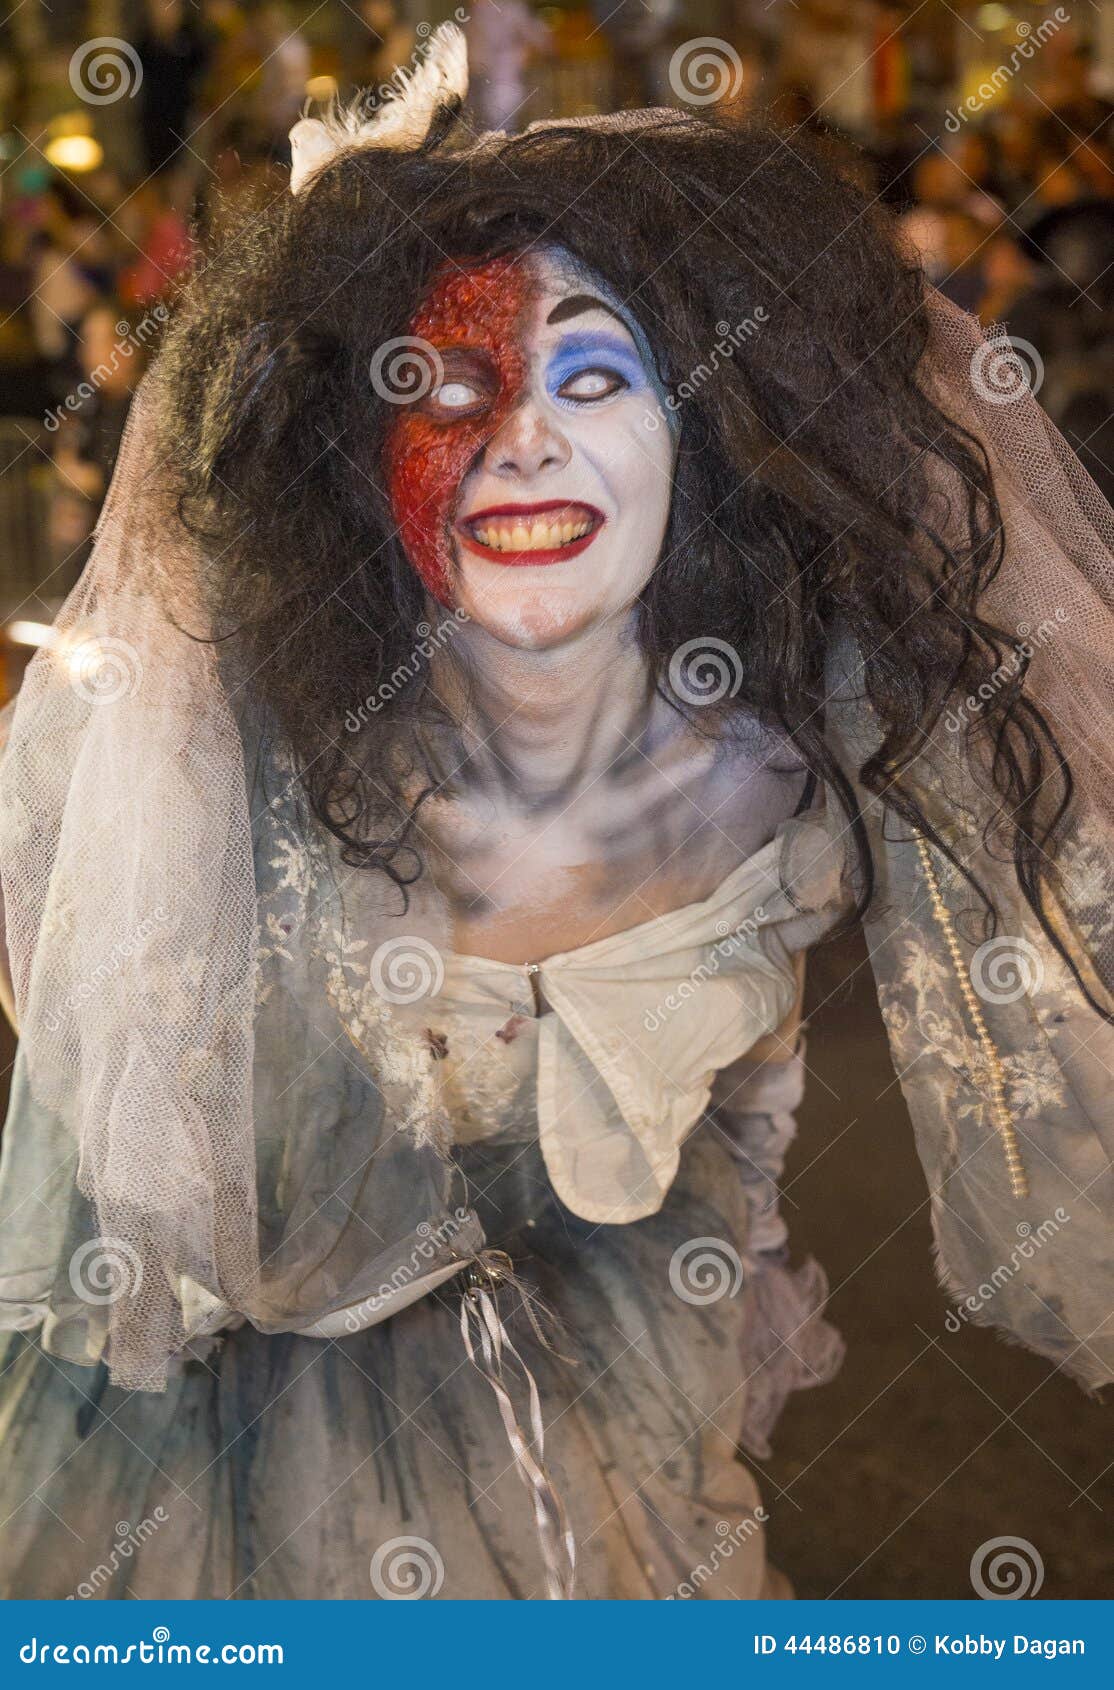 Gay pride di Las Vegas. LAS VEGAS - 5 SETTEMBRE: L'attrice dalla cupola di spavento al circo del circo partecipa alla parata di gay pride annuale di Las Vegas il 5 settembre 2014